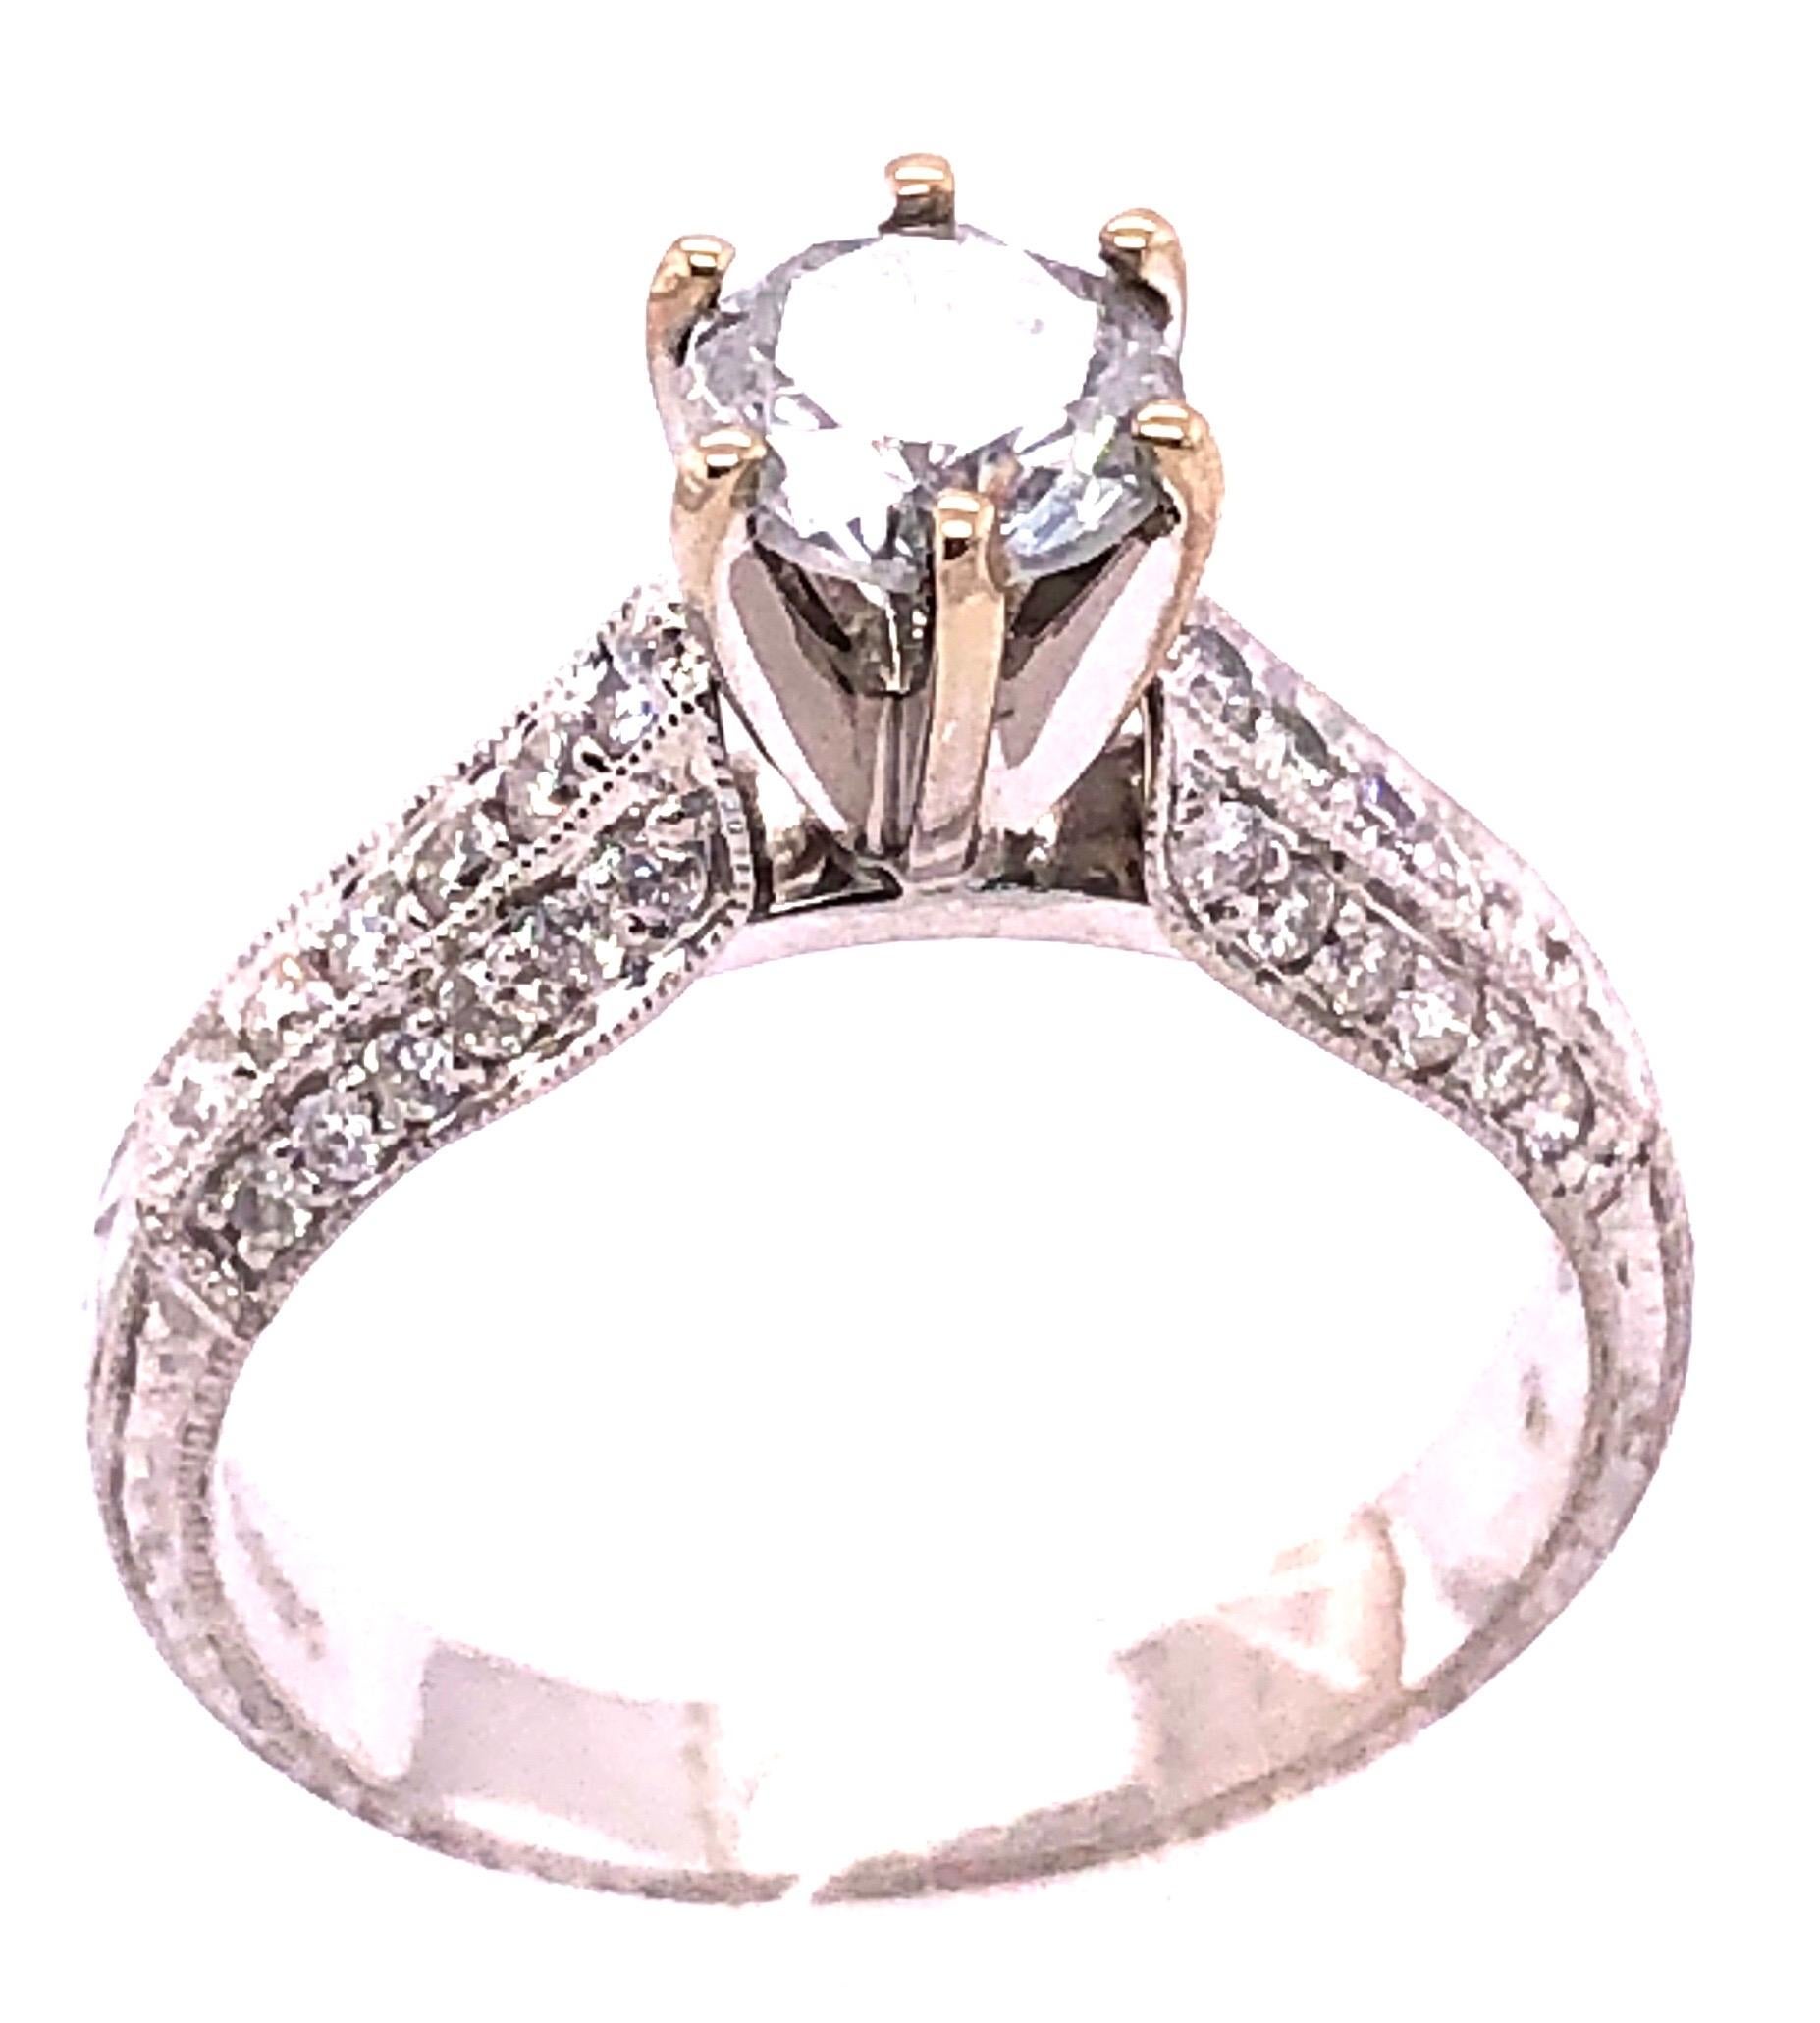 18 Karat White Gold Diamond Engagement Ring 1.40 Total Diamond Weight.
Size 6.75 
4.55 grams total weight.